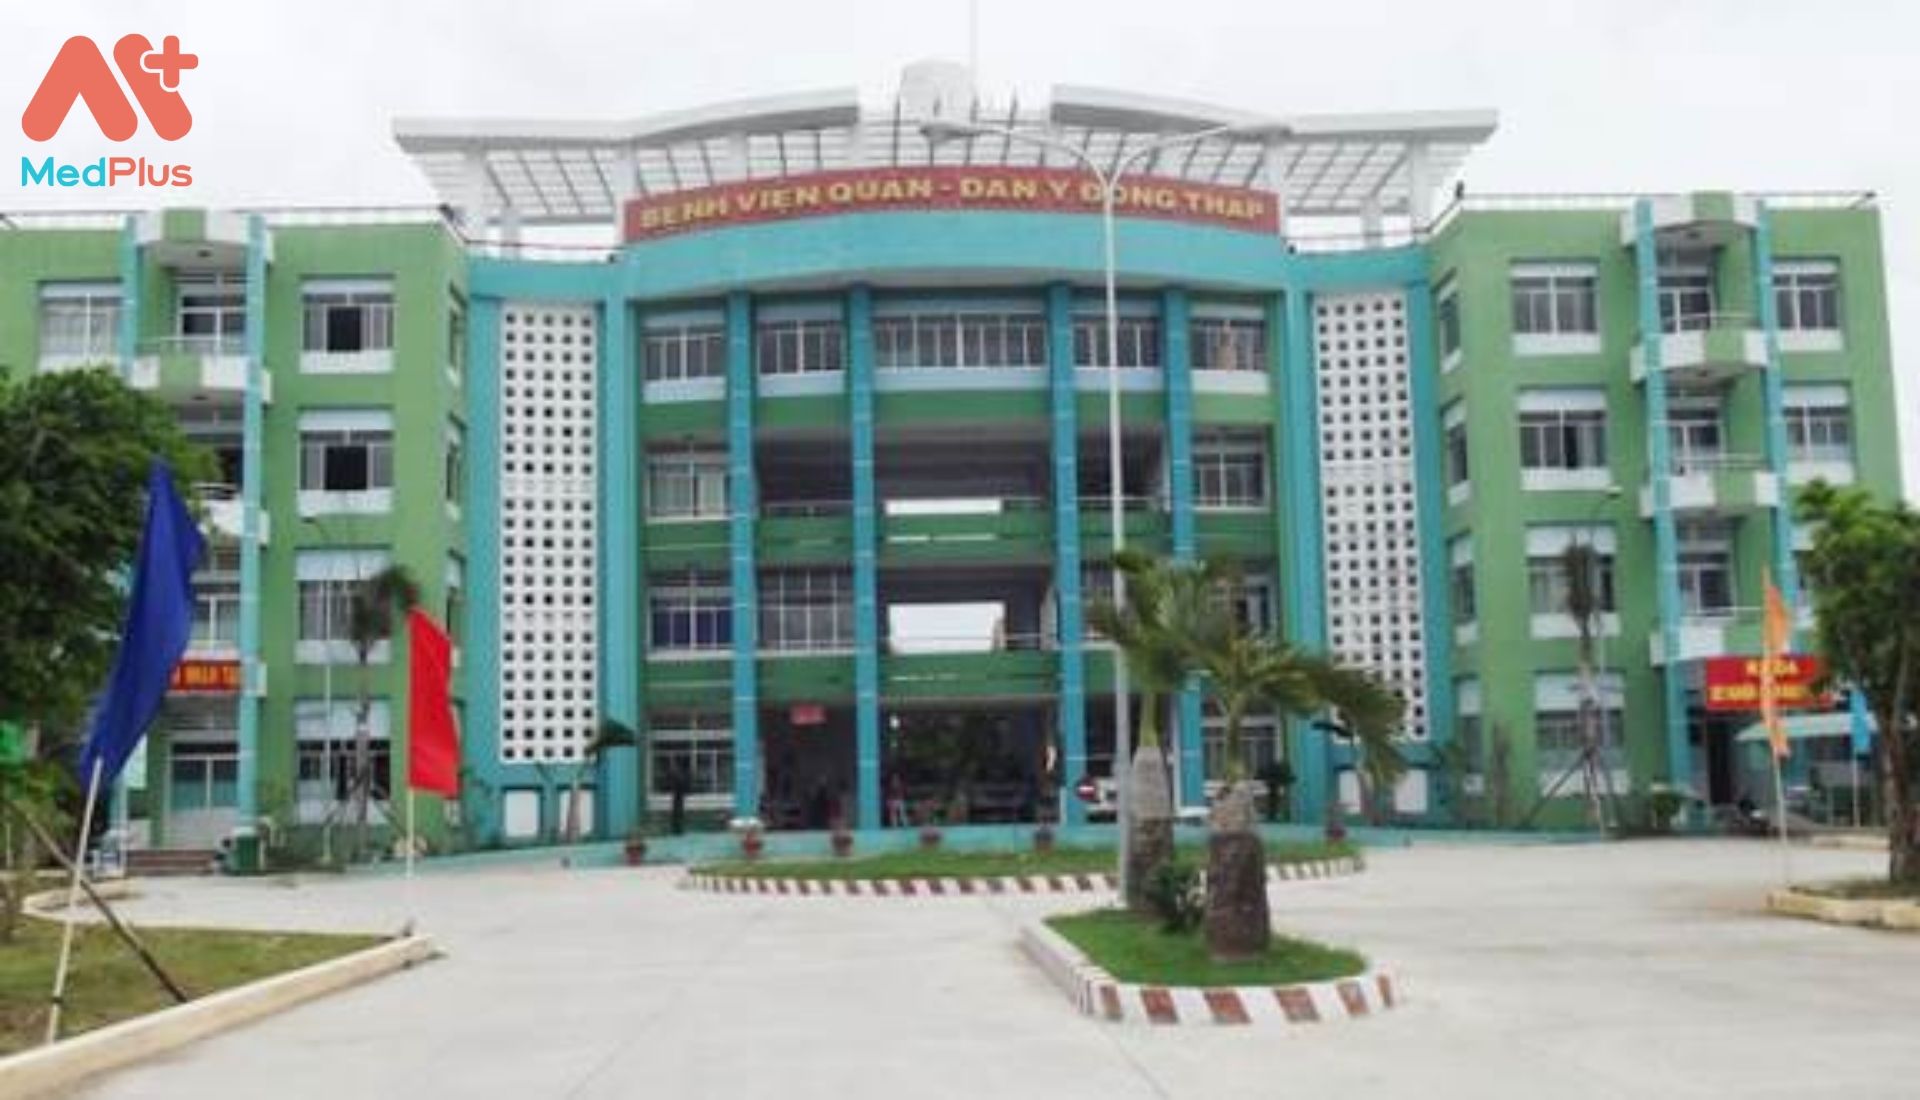 Bệnh viện quân dân y tỉnh Đồng Tháp